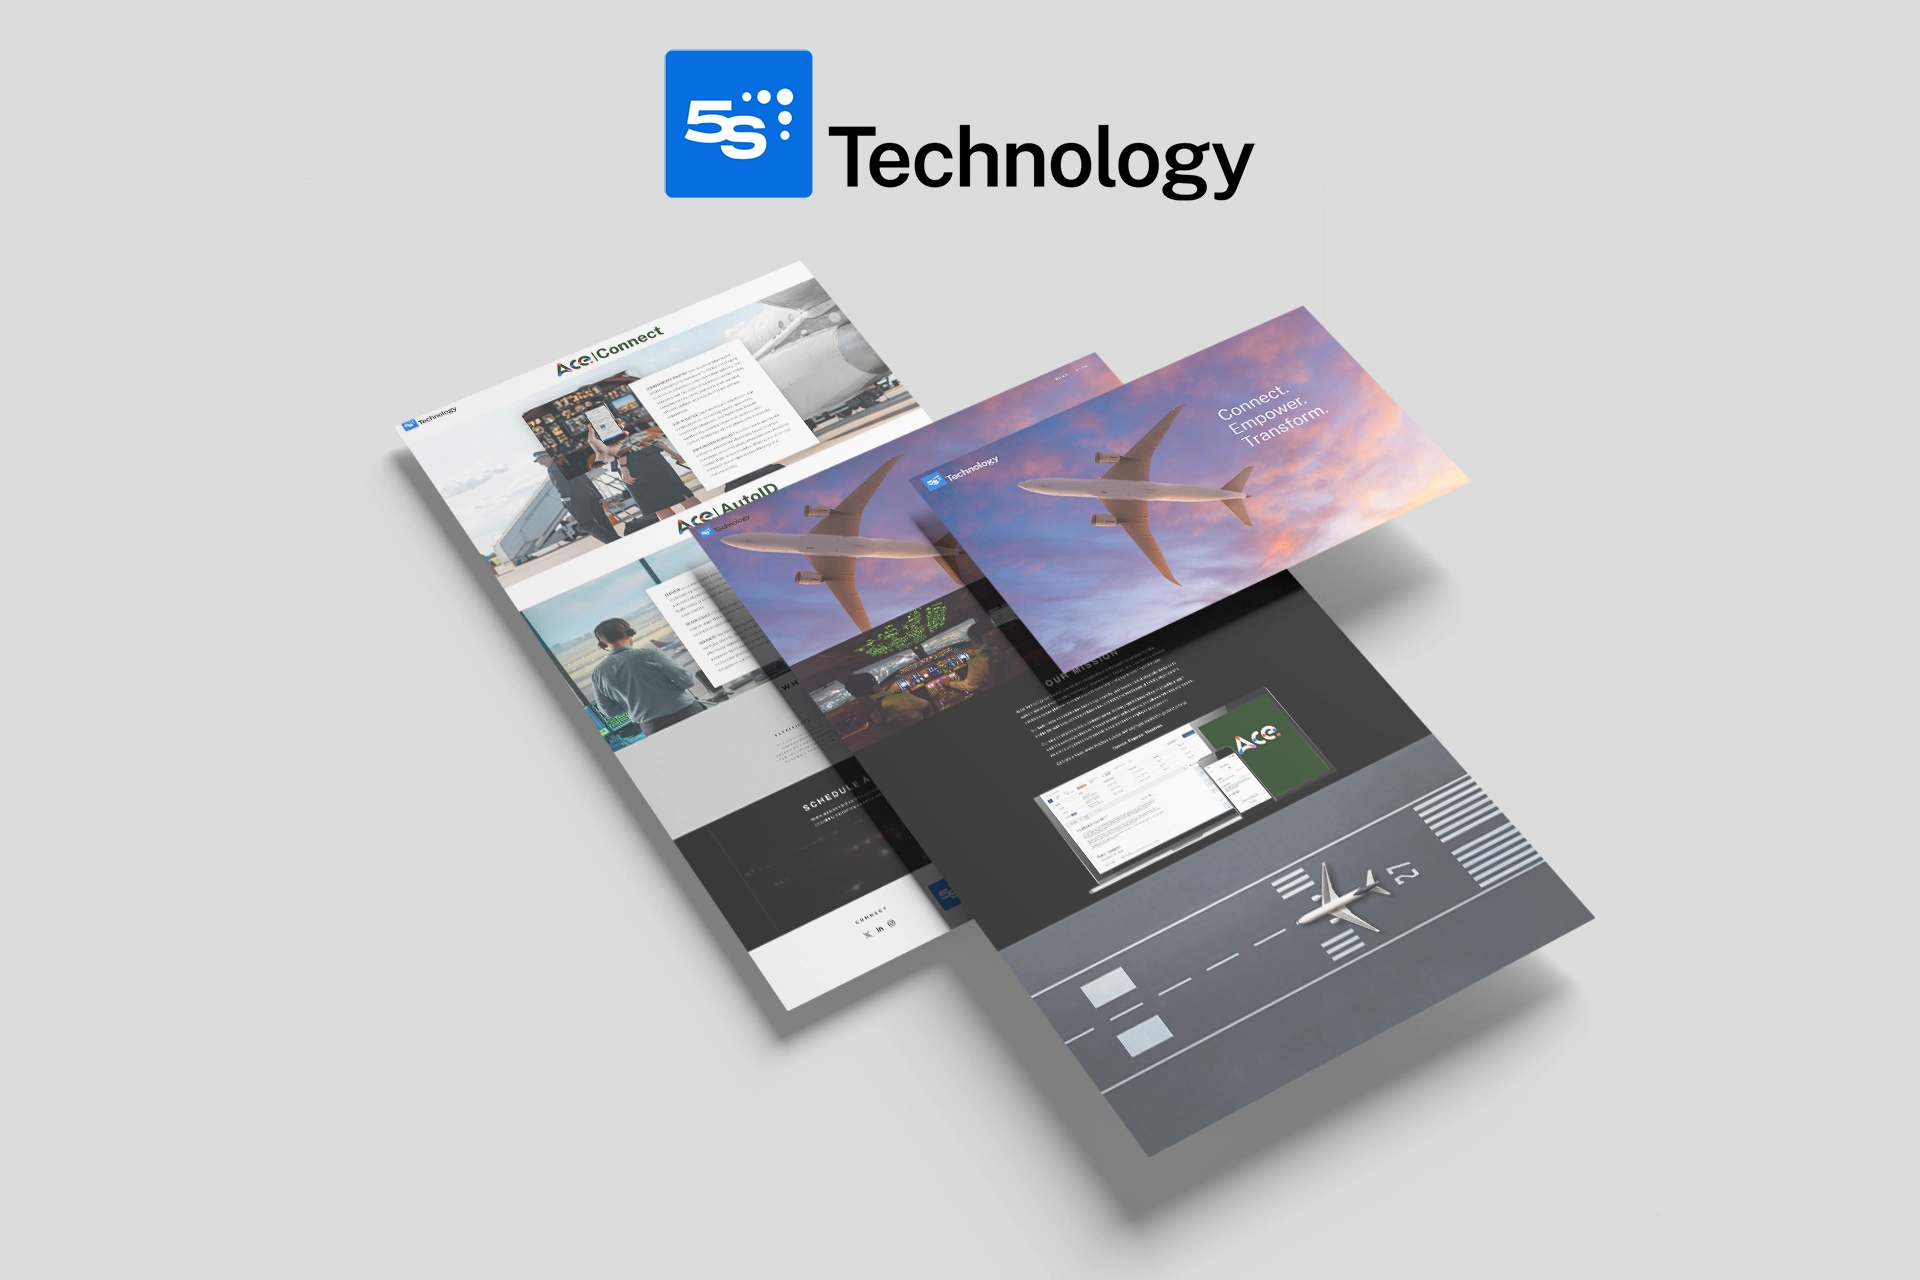 5S Technology Website